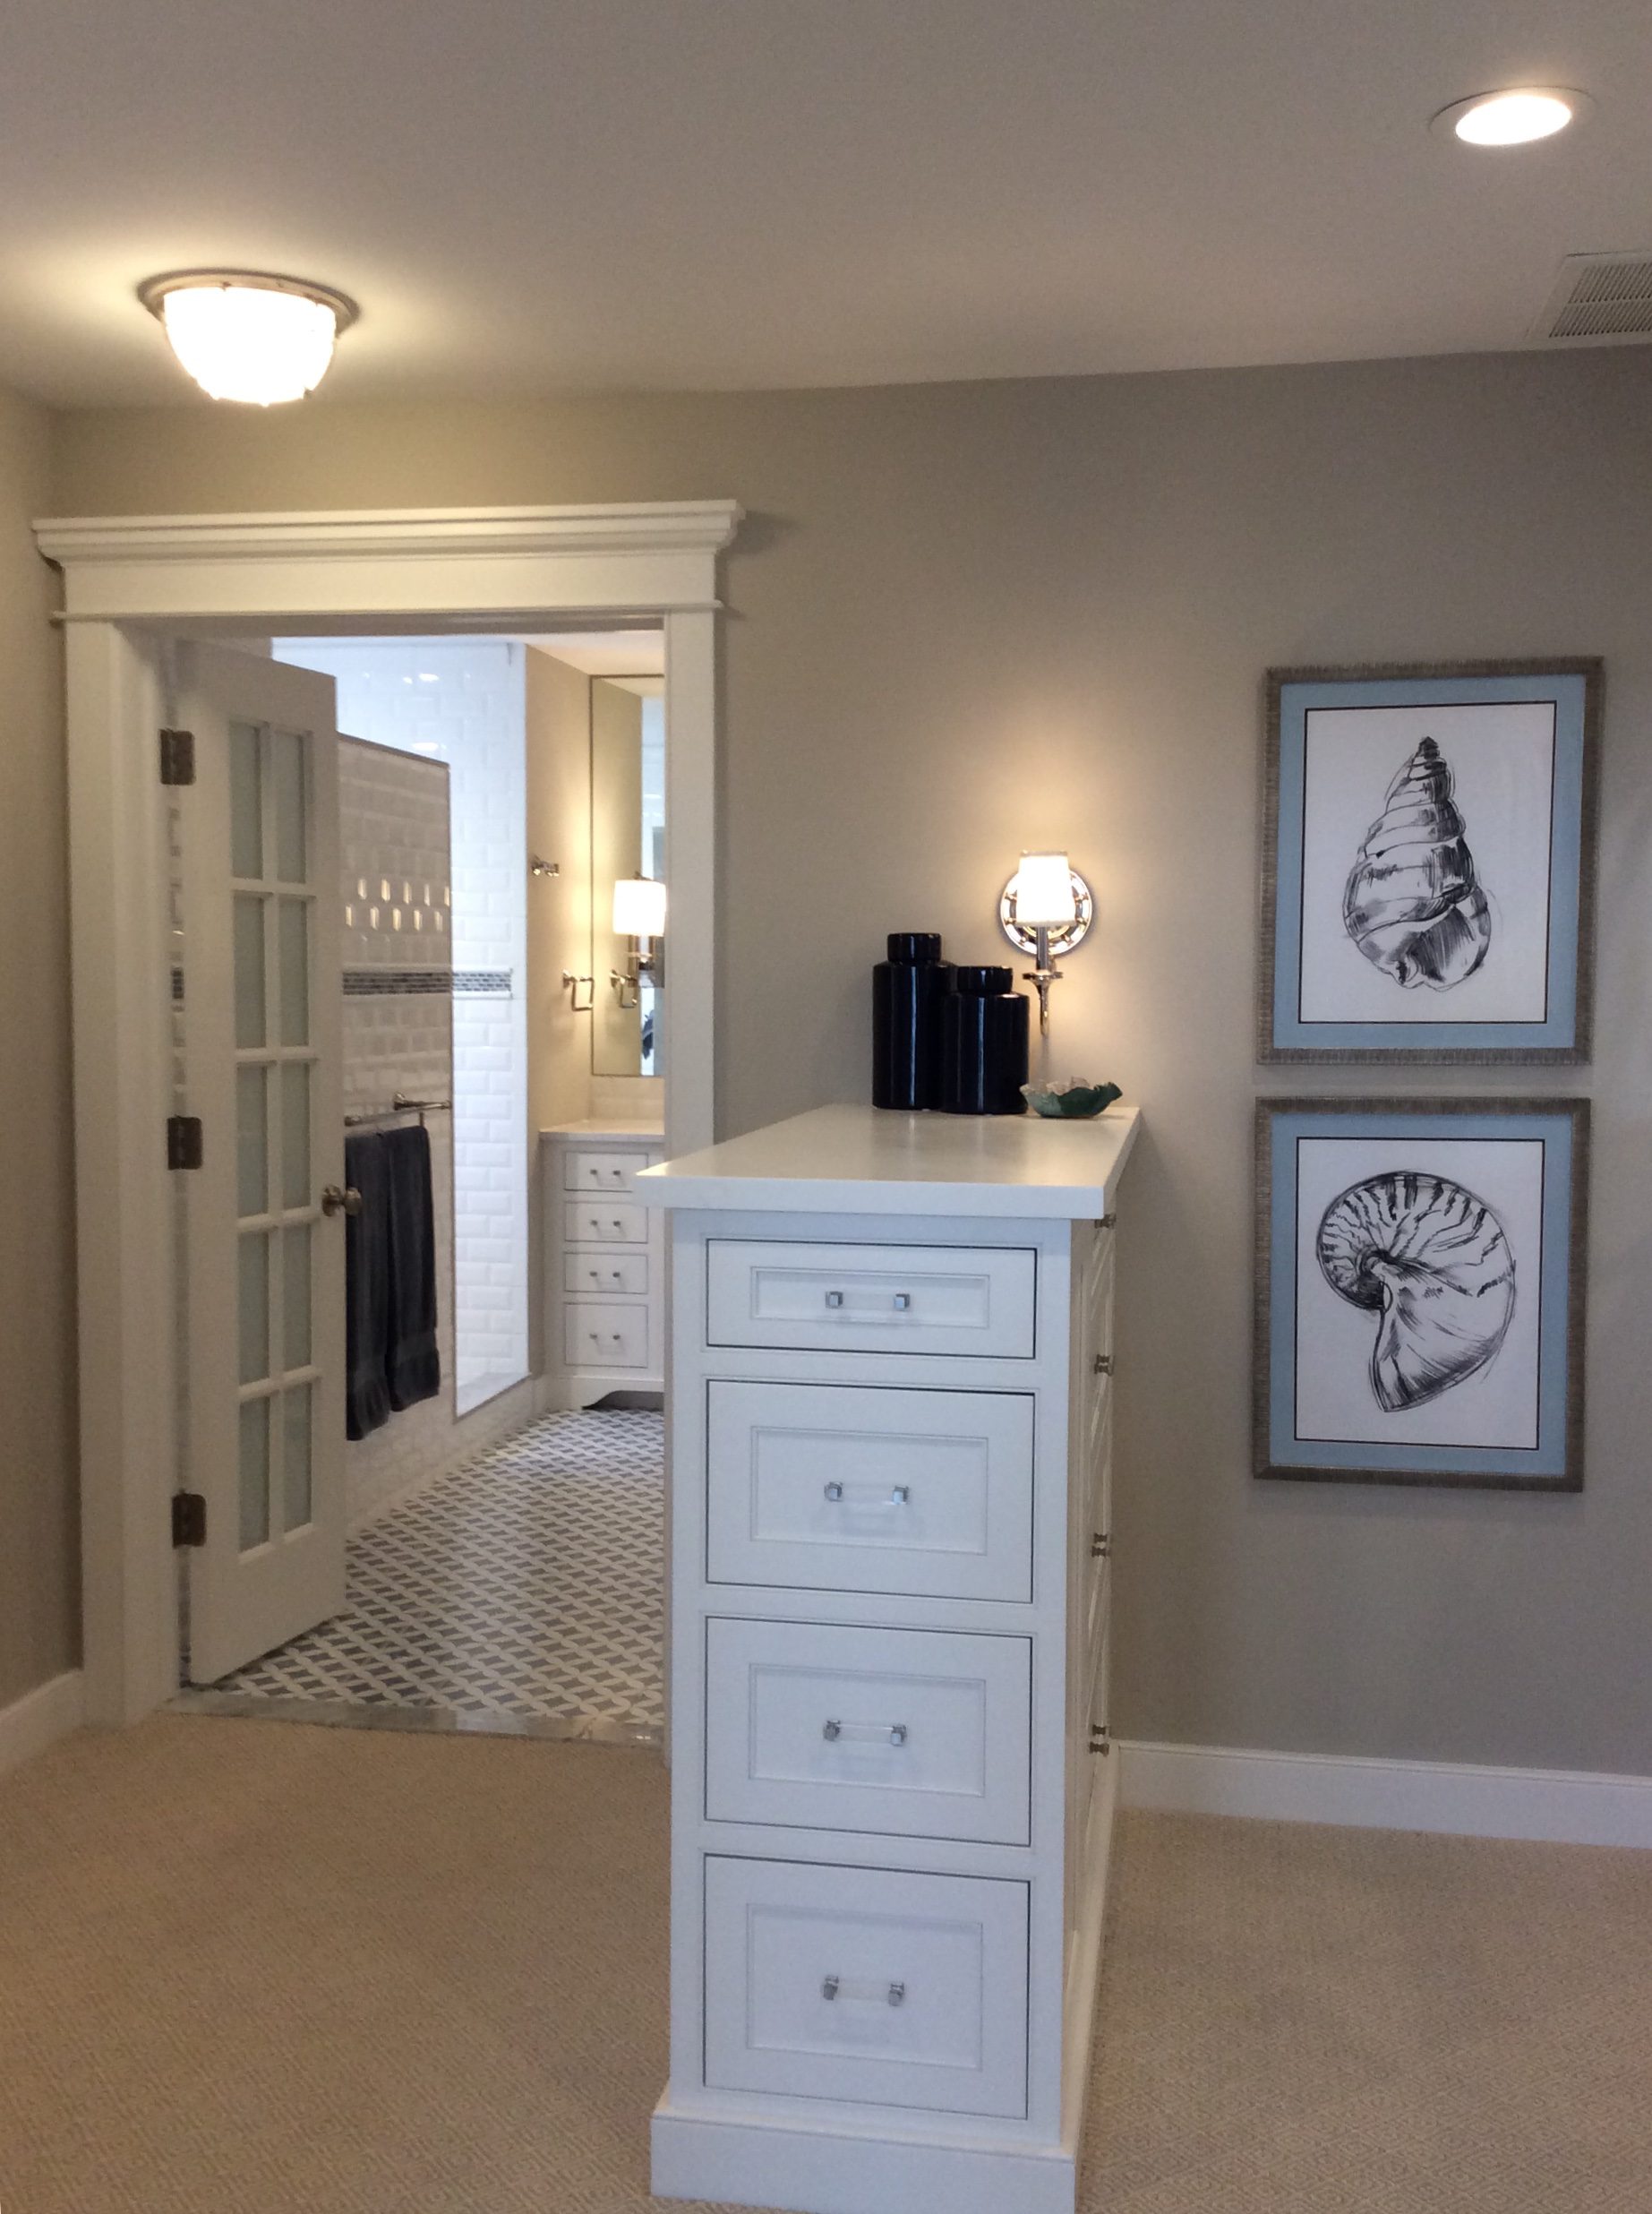 Bethany Beach Home Bedroom Wardrobe Cabinet and Wall Decor